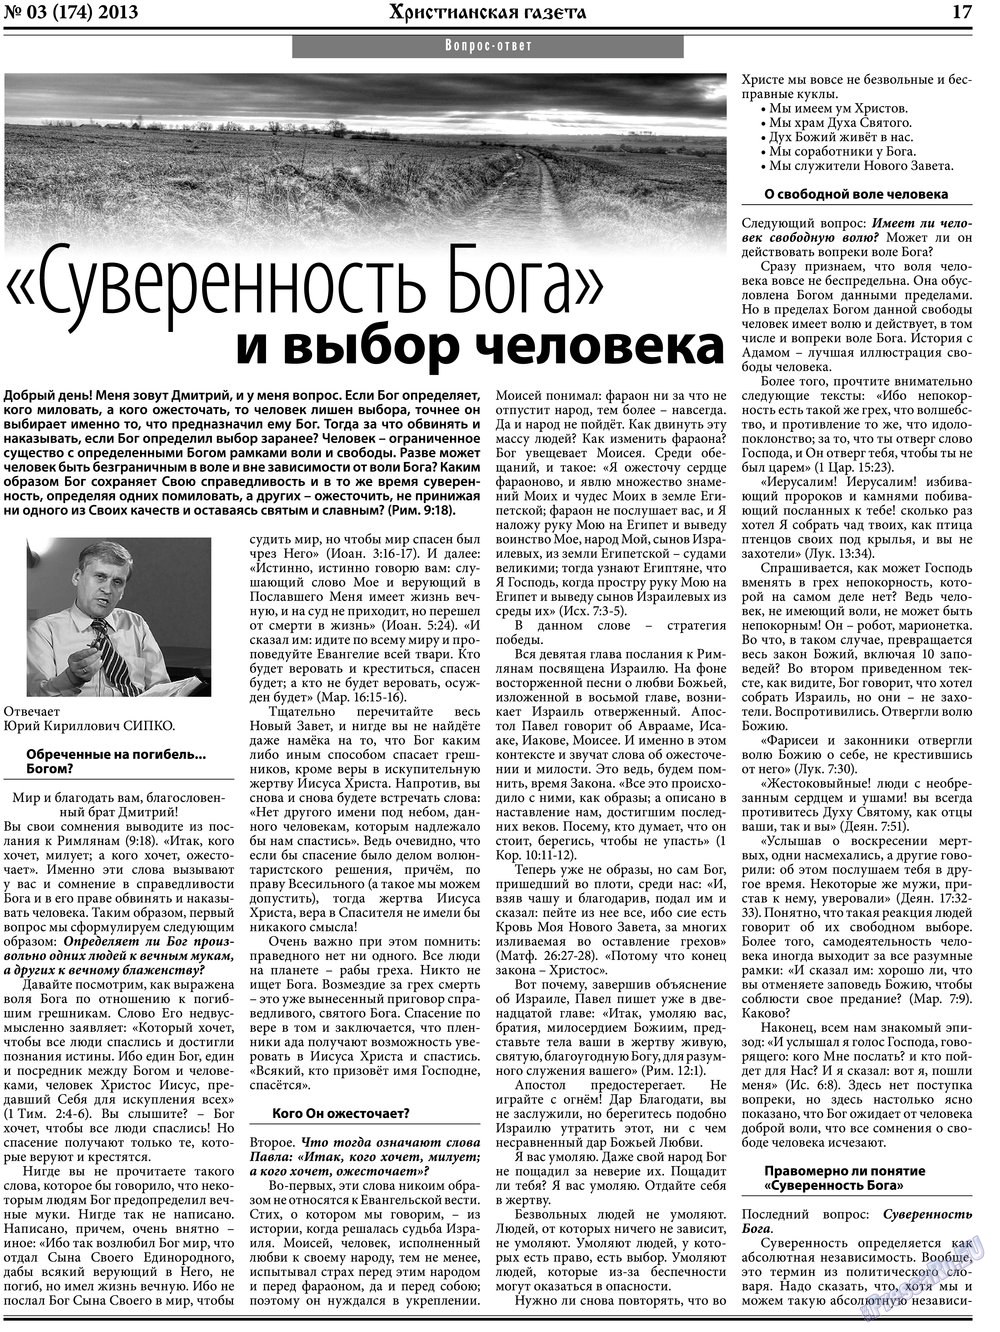 Христианская газета, газета. 2013 №3 стр.25